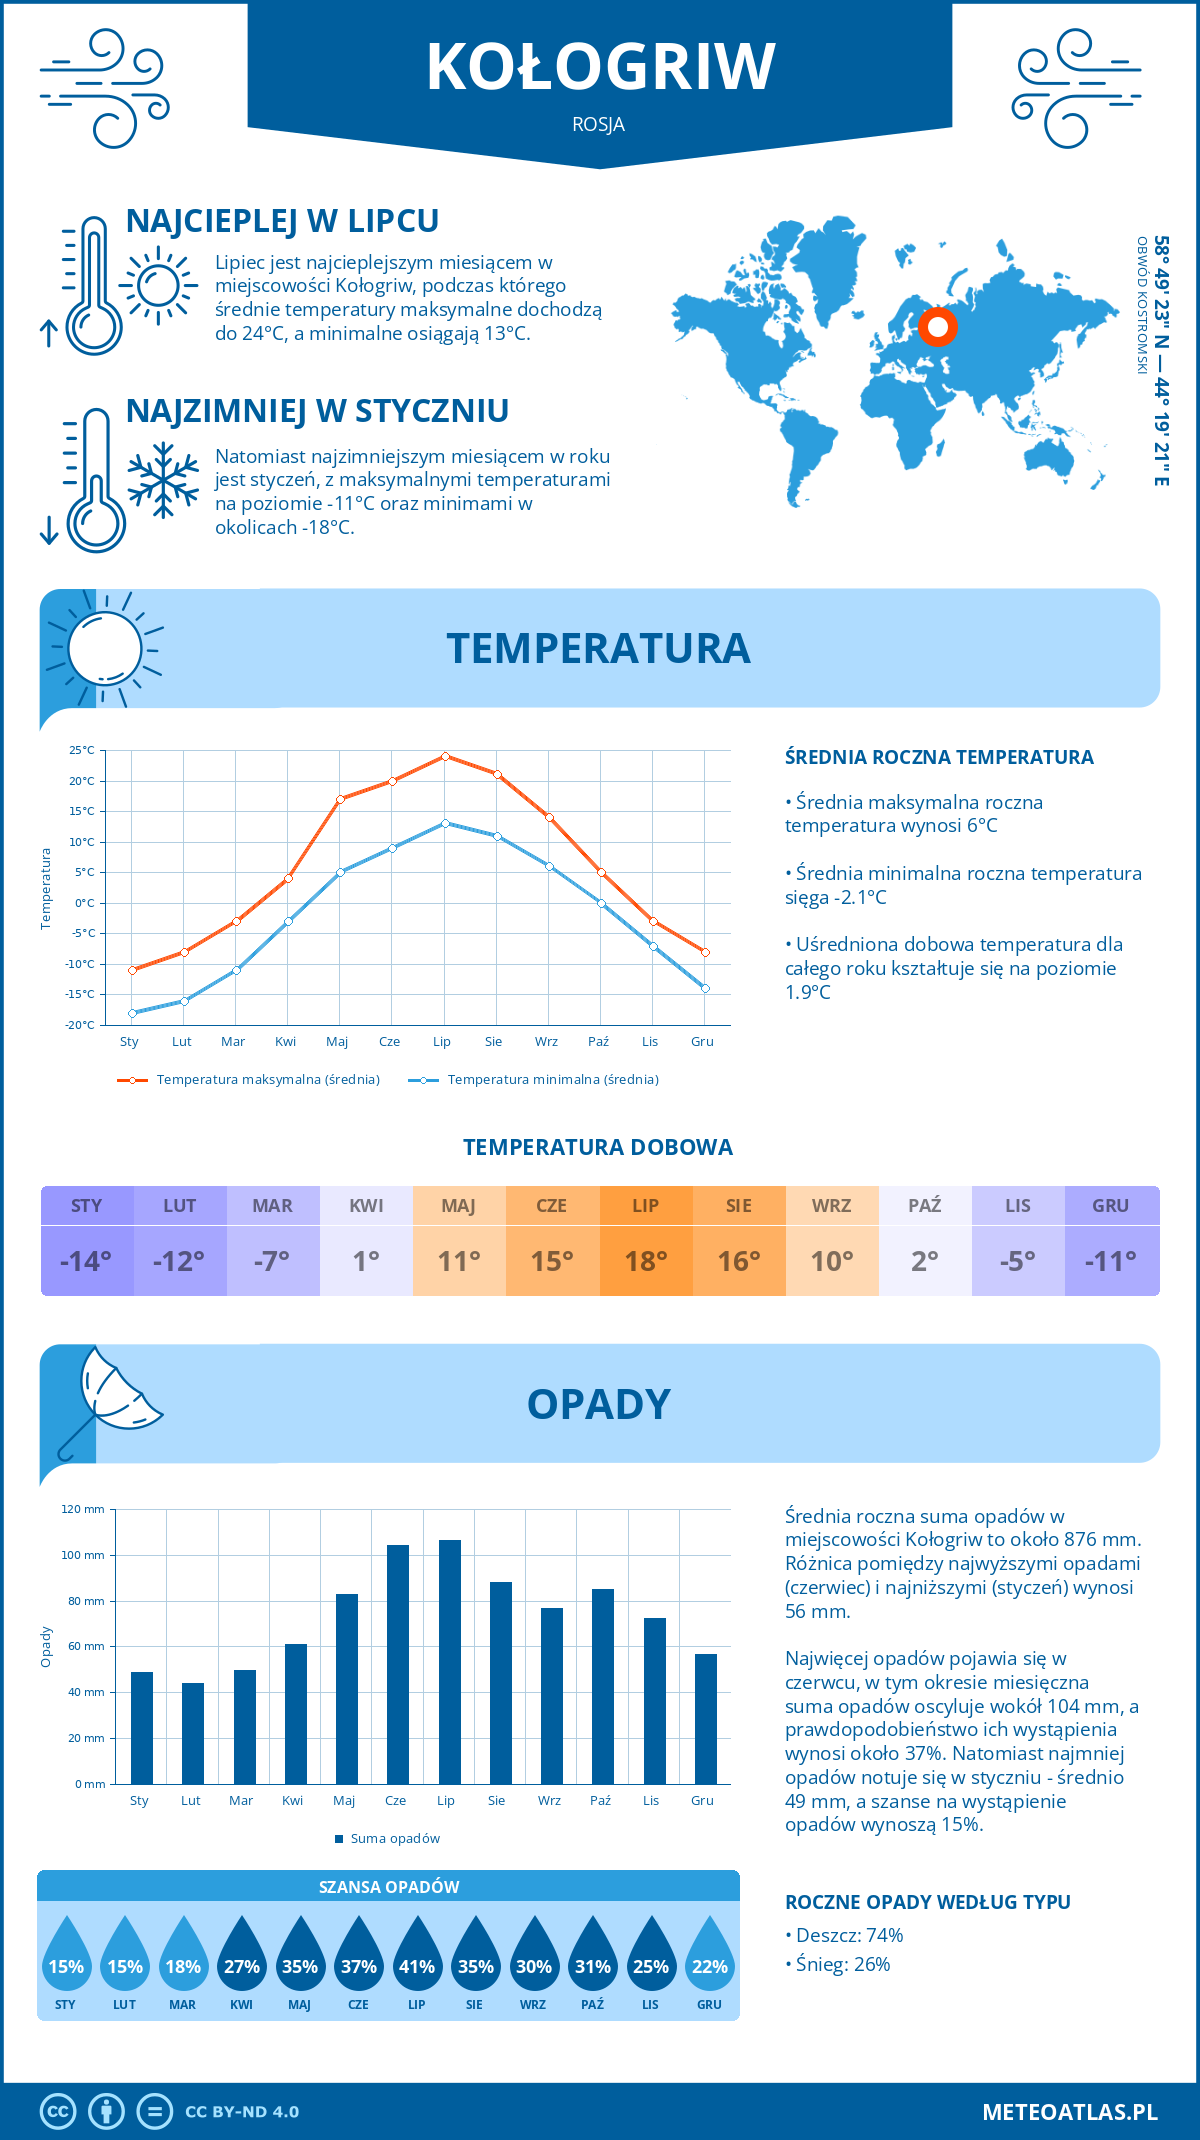 Pogoda Kołogriw (Rosja). Temperatura oraz opady.